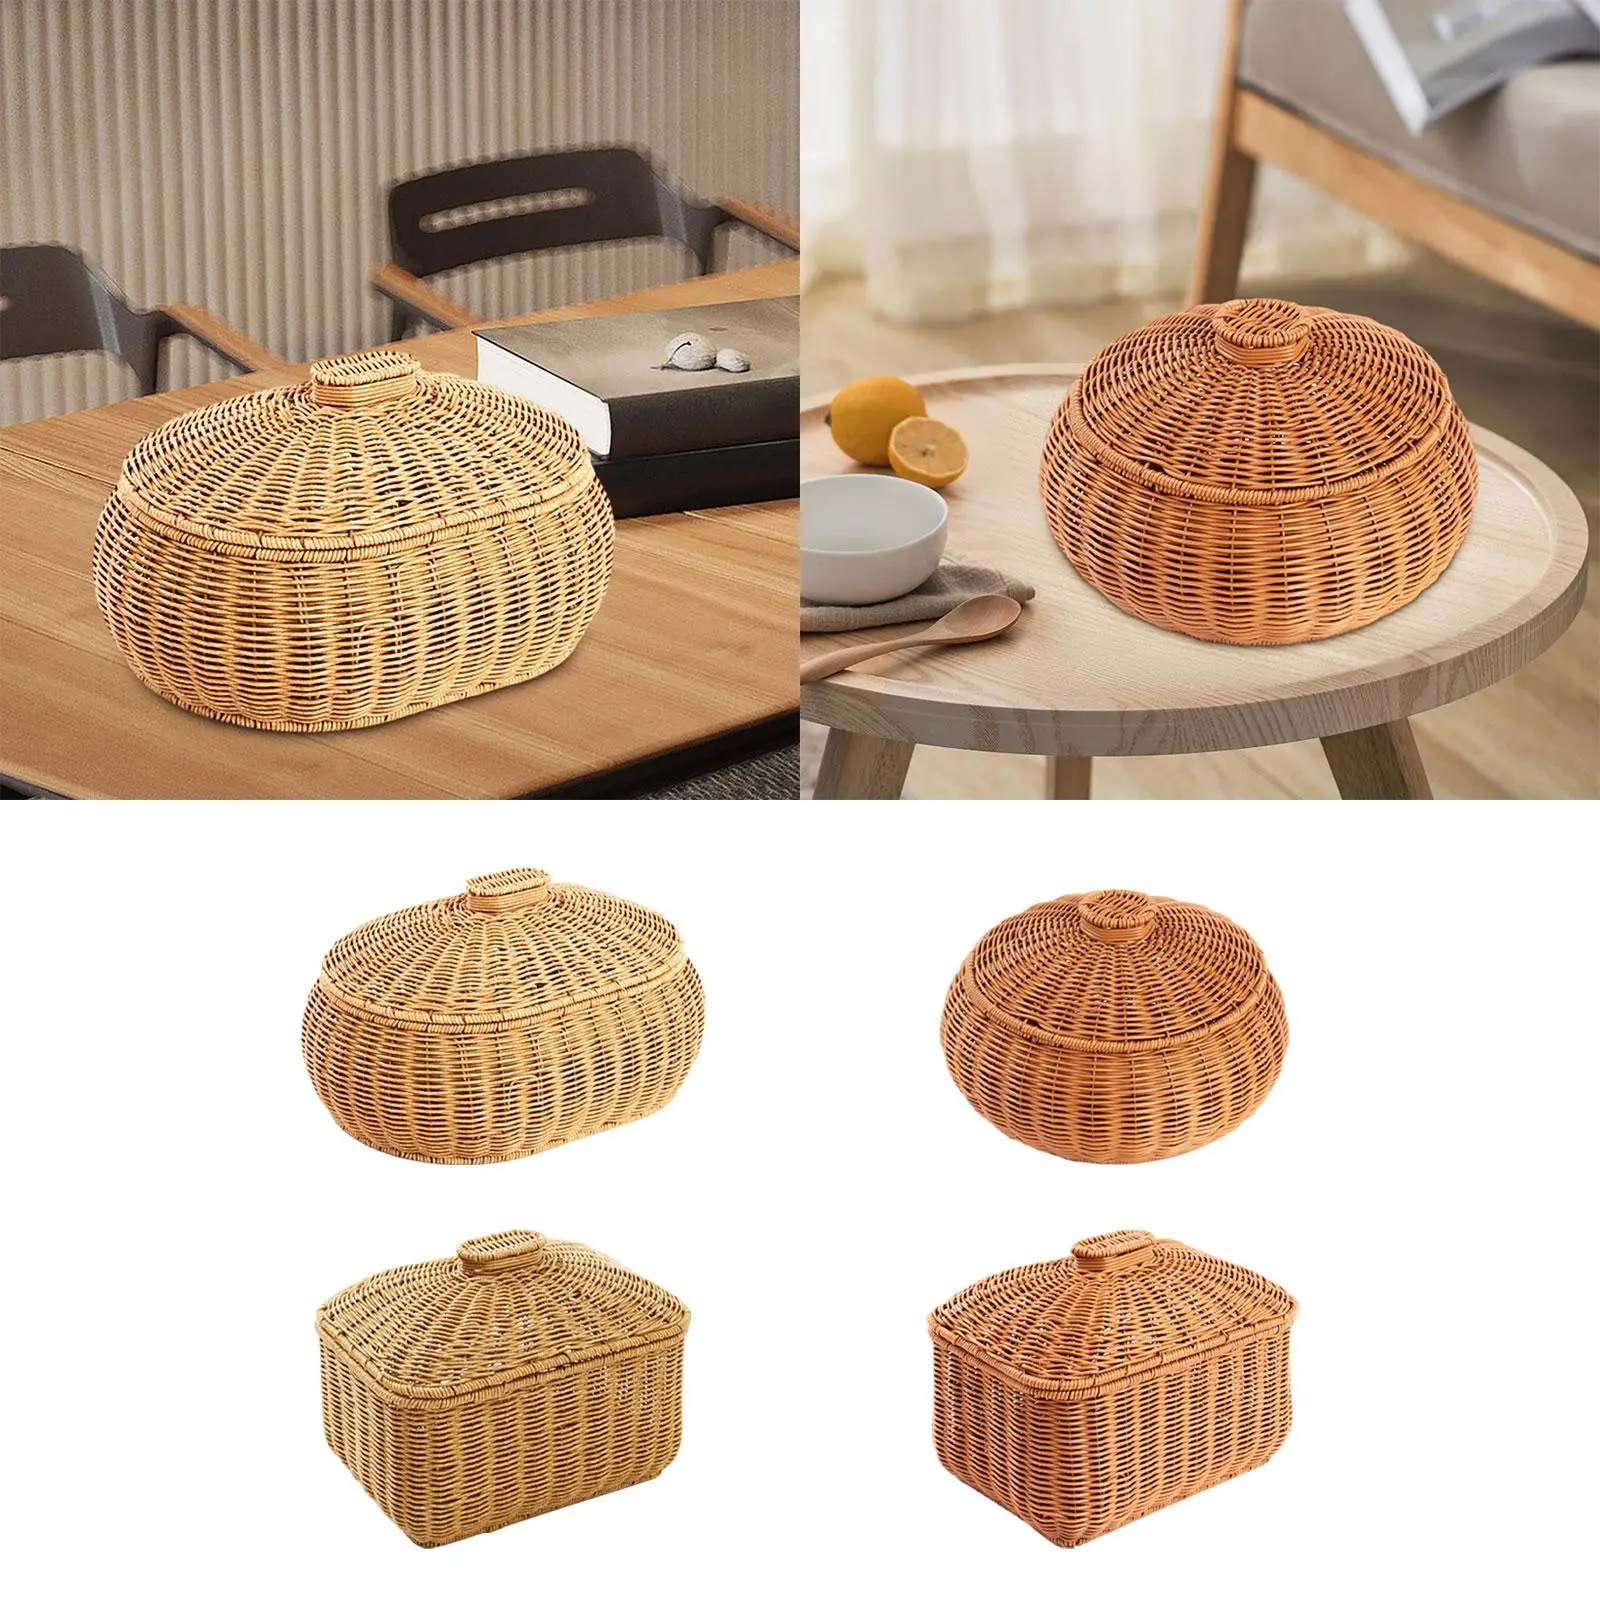 Hand Woven Basket Desk Clutter Organization Crafts Food Storage Basket for Restaurant Bedroom Home Living Room Shelves